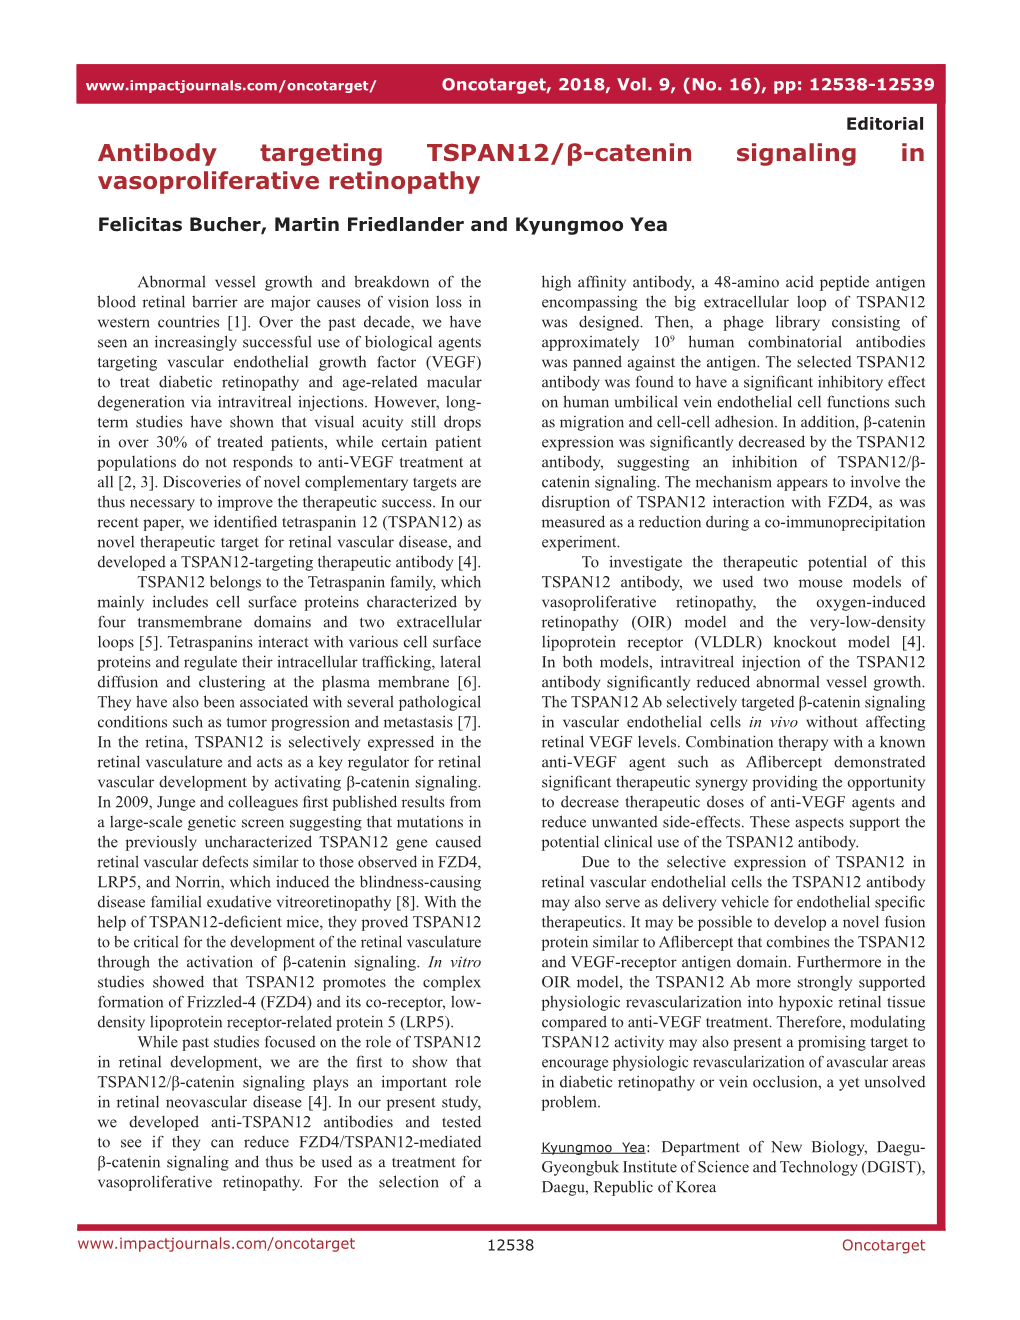 Antibody Targeting TSPAN12/Β-Catenin Signaling in Vasoproliferative Retinopathy